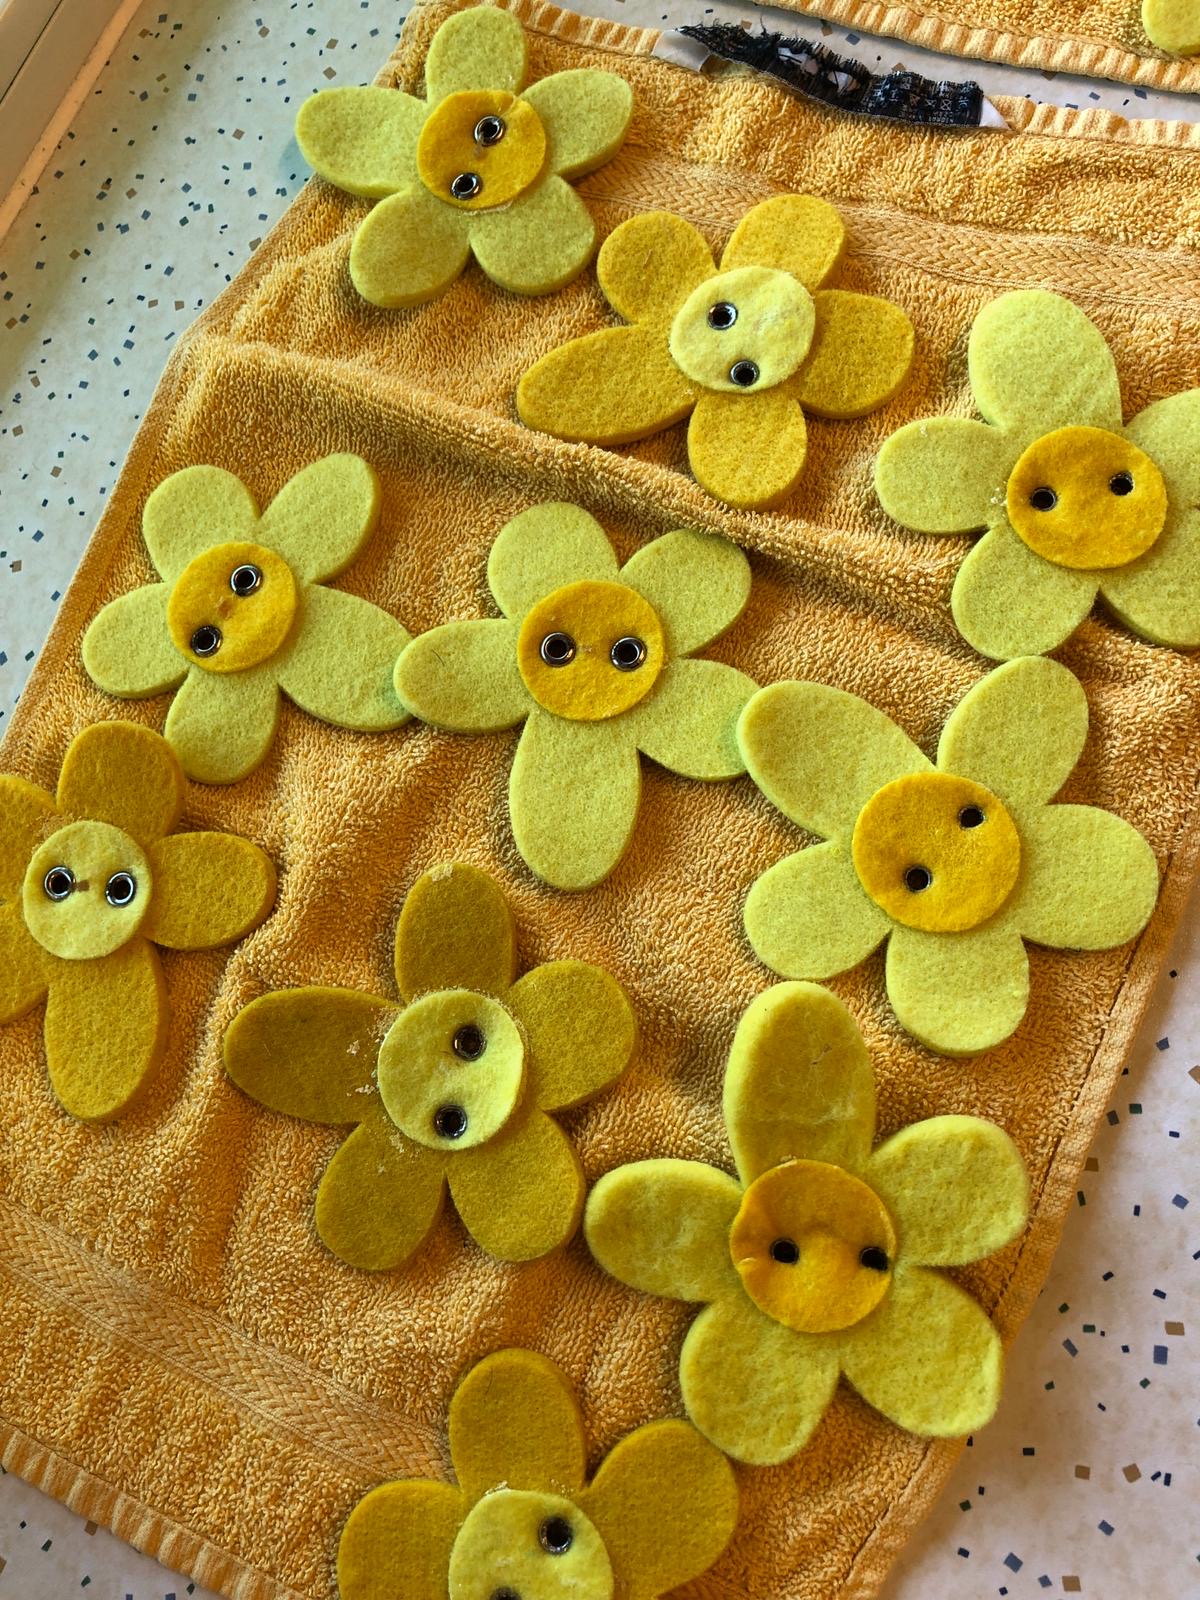 Bild zum Schritt 3 für das Bastel- und DIY-Abenteuer für Kinder: 'Anschließend die Filzblumen zum Trocknen auf ein Handtuch legen.'